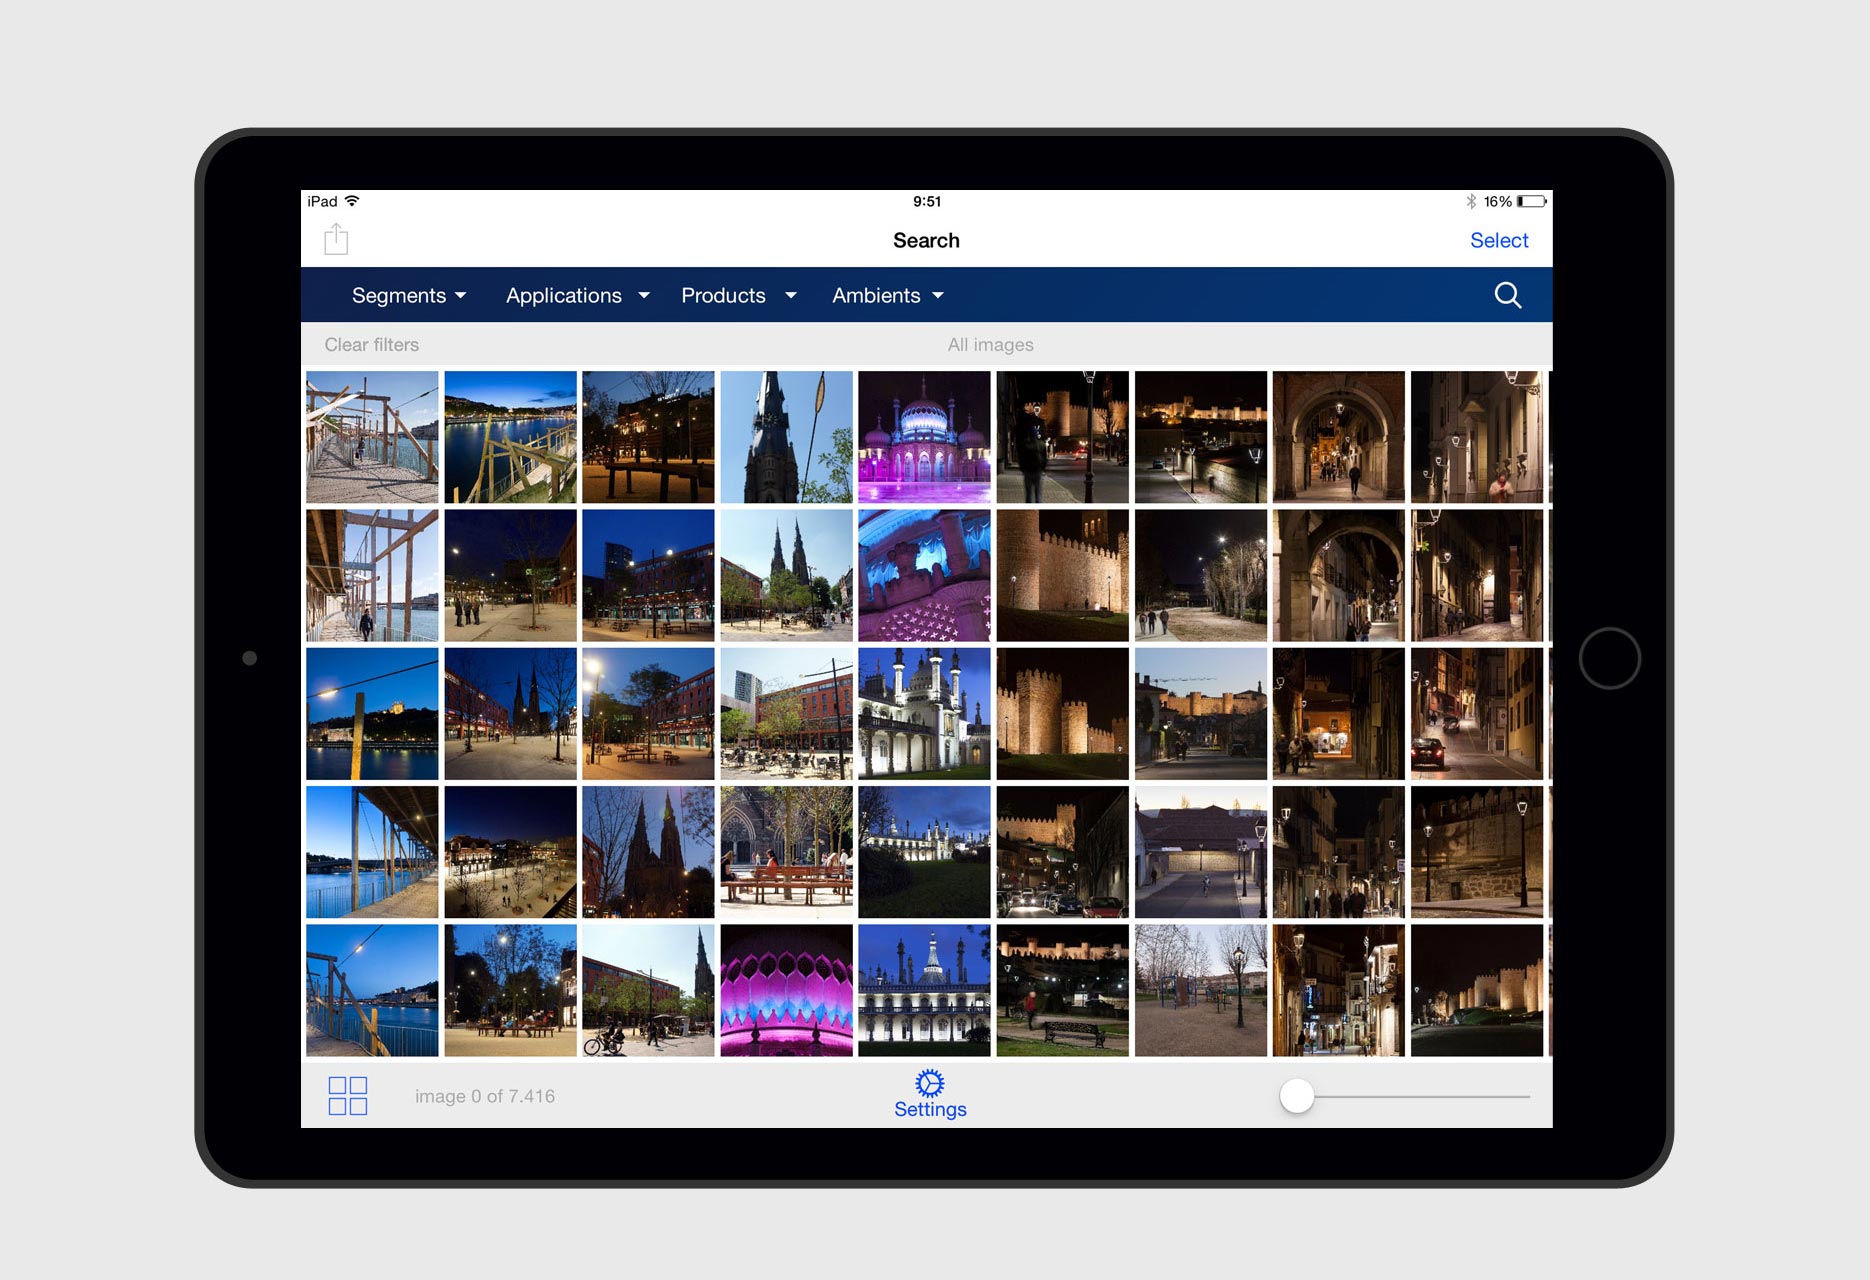 Aplicación iPad Banco de Imágenes Philips - app móvil / desarrollo iOS